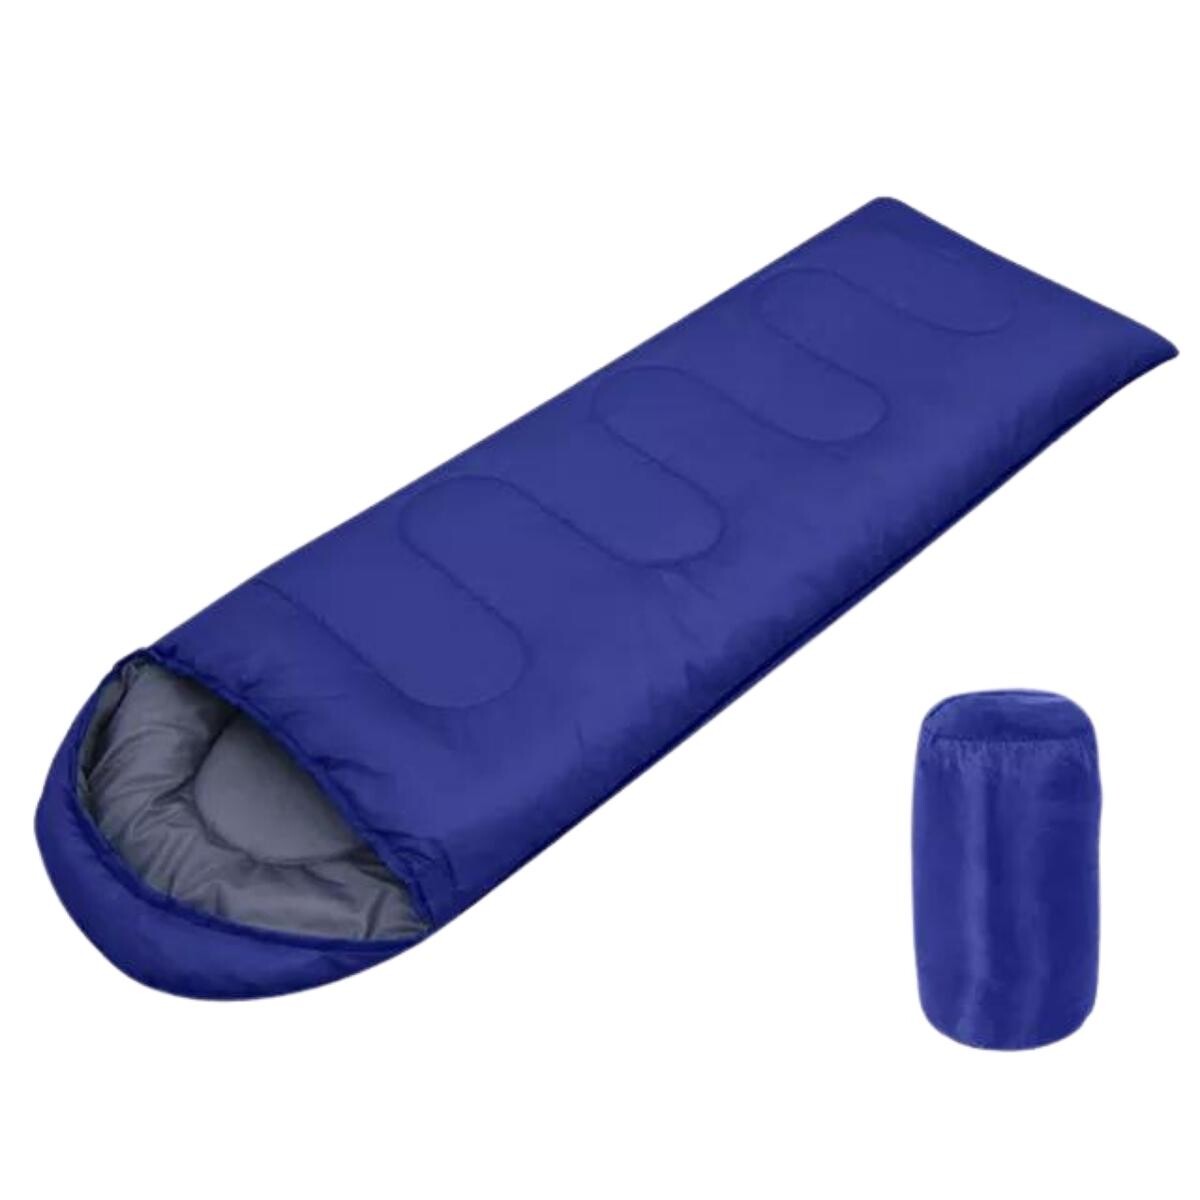 Sobre de dormir con capucha - 0.8 Kg - Azul Oscuro 